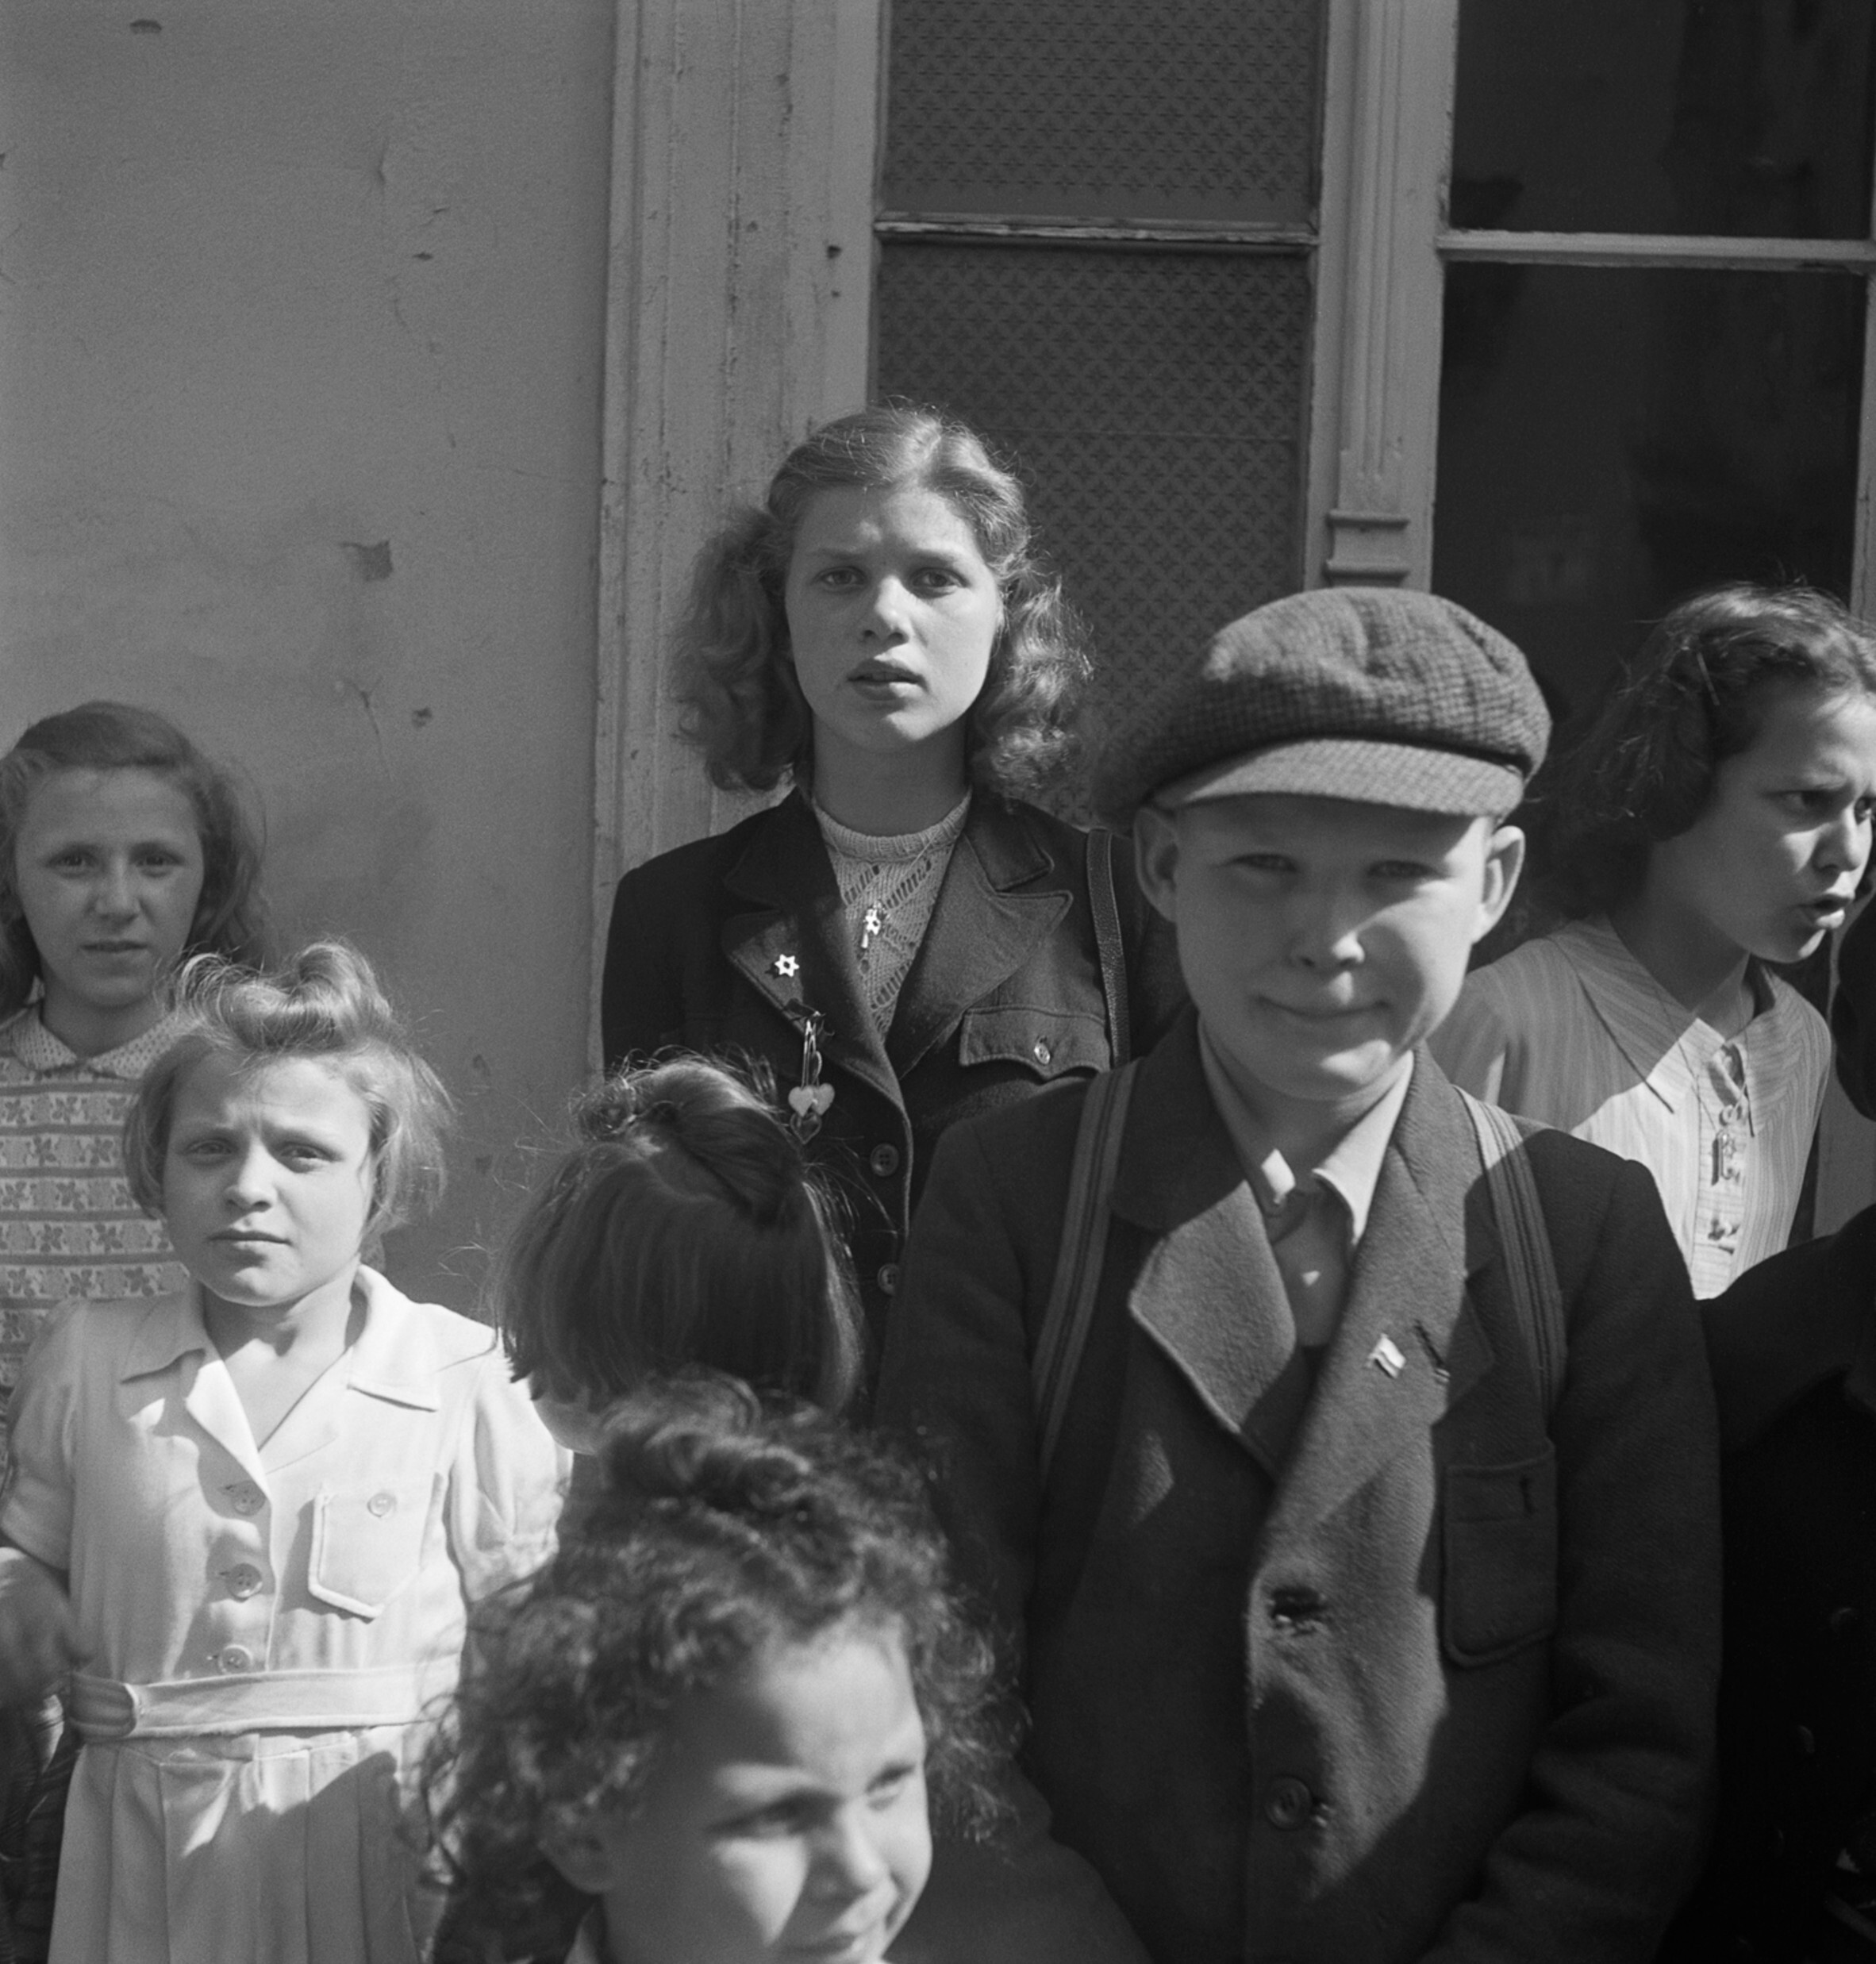 Дети ждут у регистратуры транзитного бюро, лагерь для перемещенных лиц Шлахтензее, Целендорф, Берлин, 1947 год. Фотограф Роман Вишняк